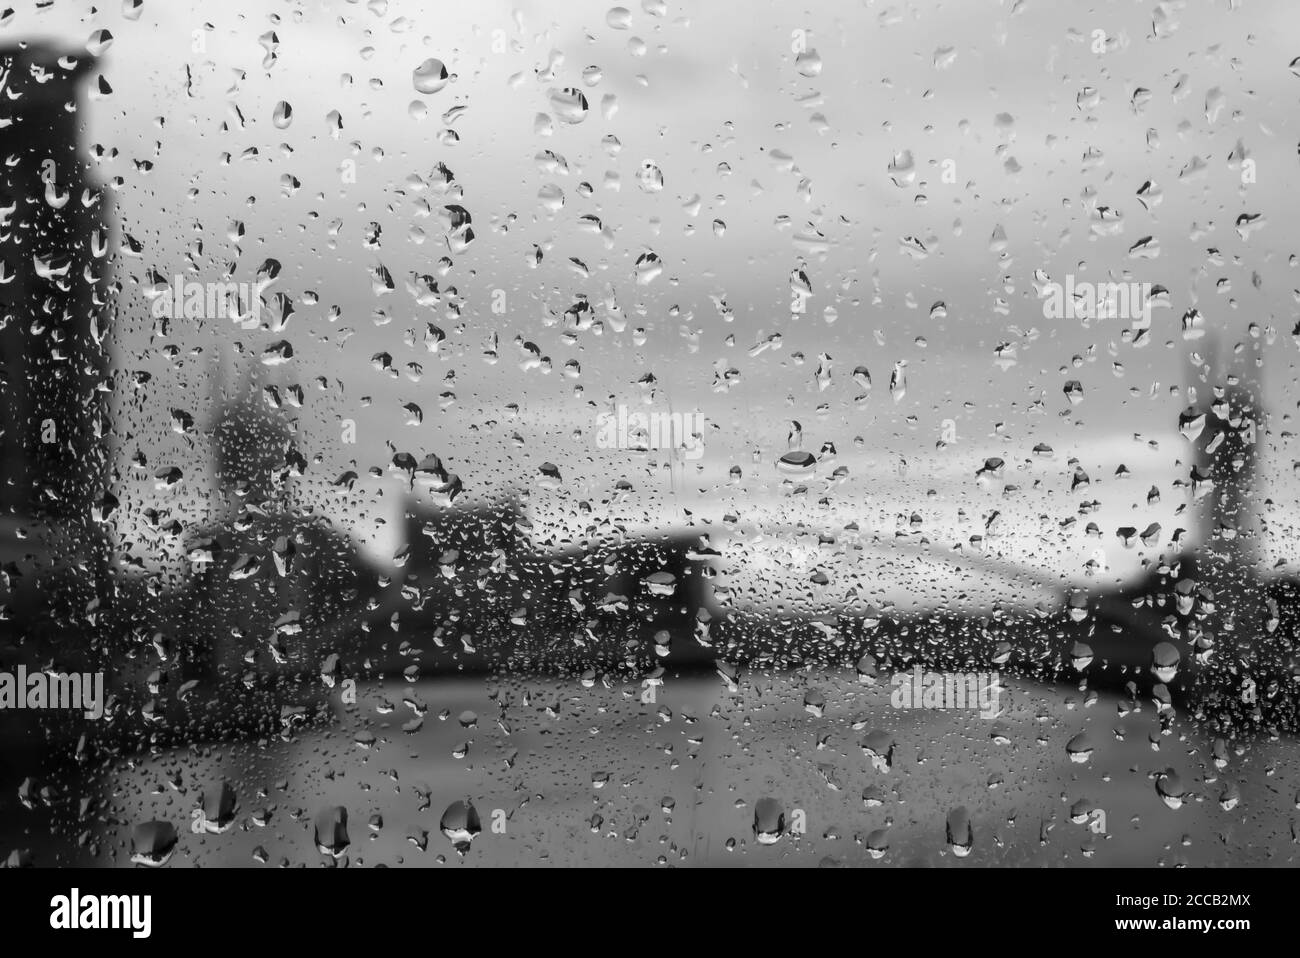 Regen auf dem feuchten Glas der Media City Fußgängerbrücke über den Manchester Ship Canal, Salford Quays, Manchester, England, UK: Schwarz-weiß Version Stockfoto